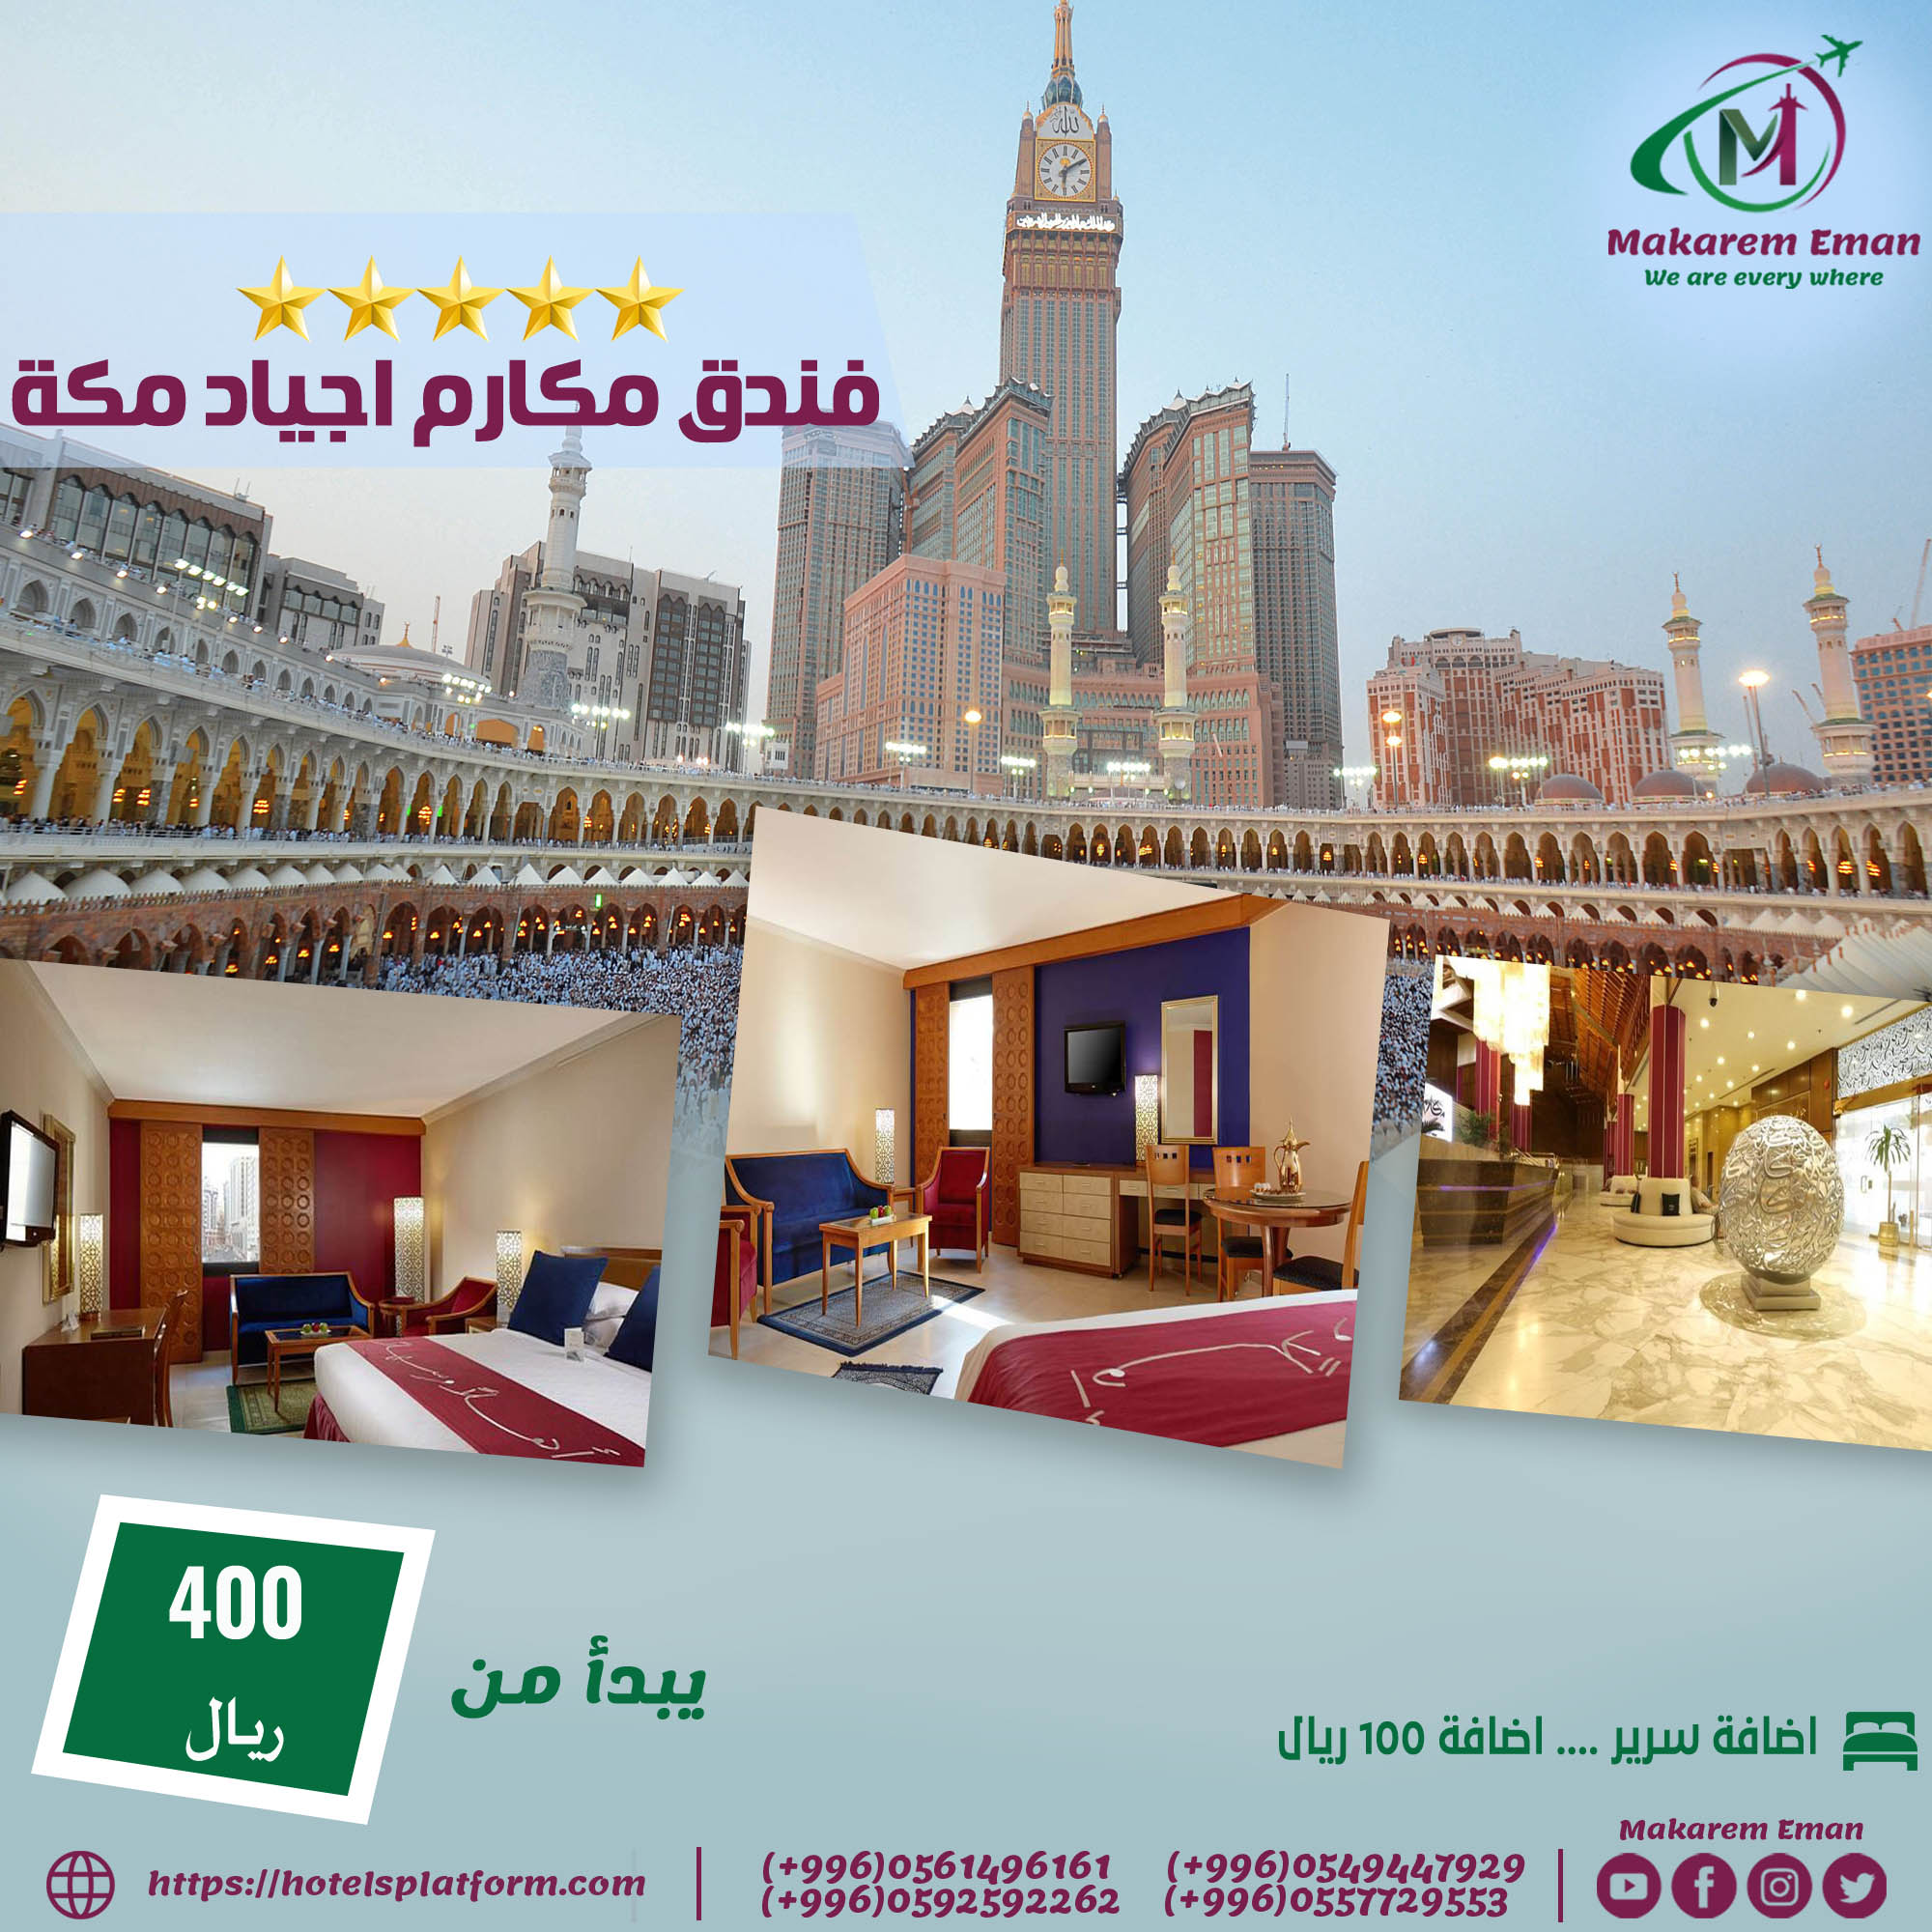 ارخص اسعار فنادق مكة القريبة من الحرم المكي اقوي عروض وخصومات شهر #سبتمبر من #مكارم_ايمان للسفر 